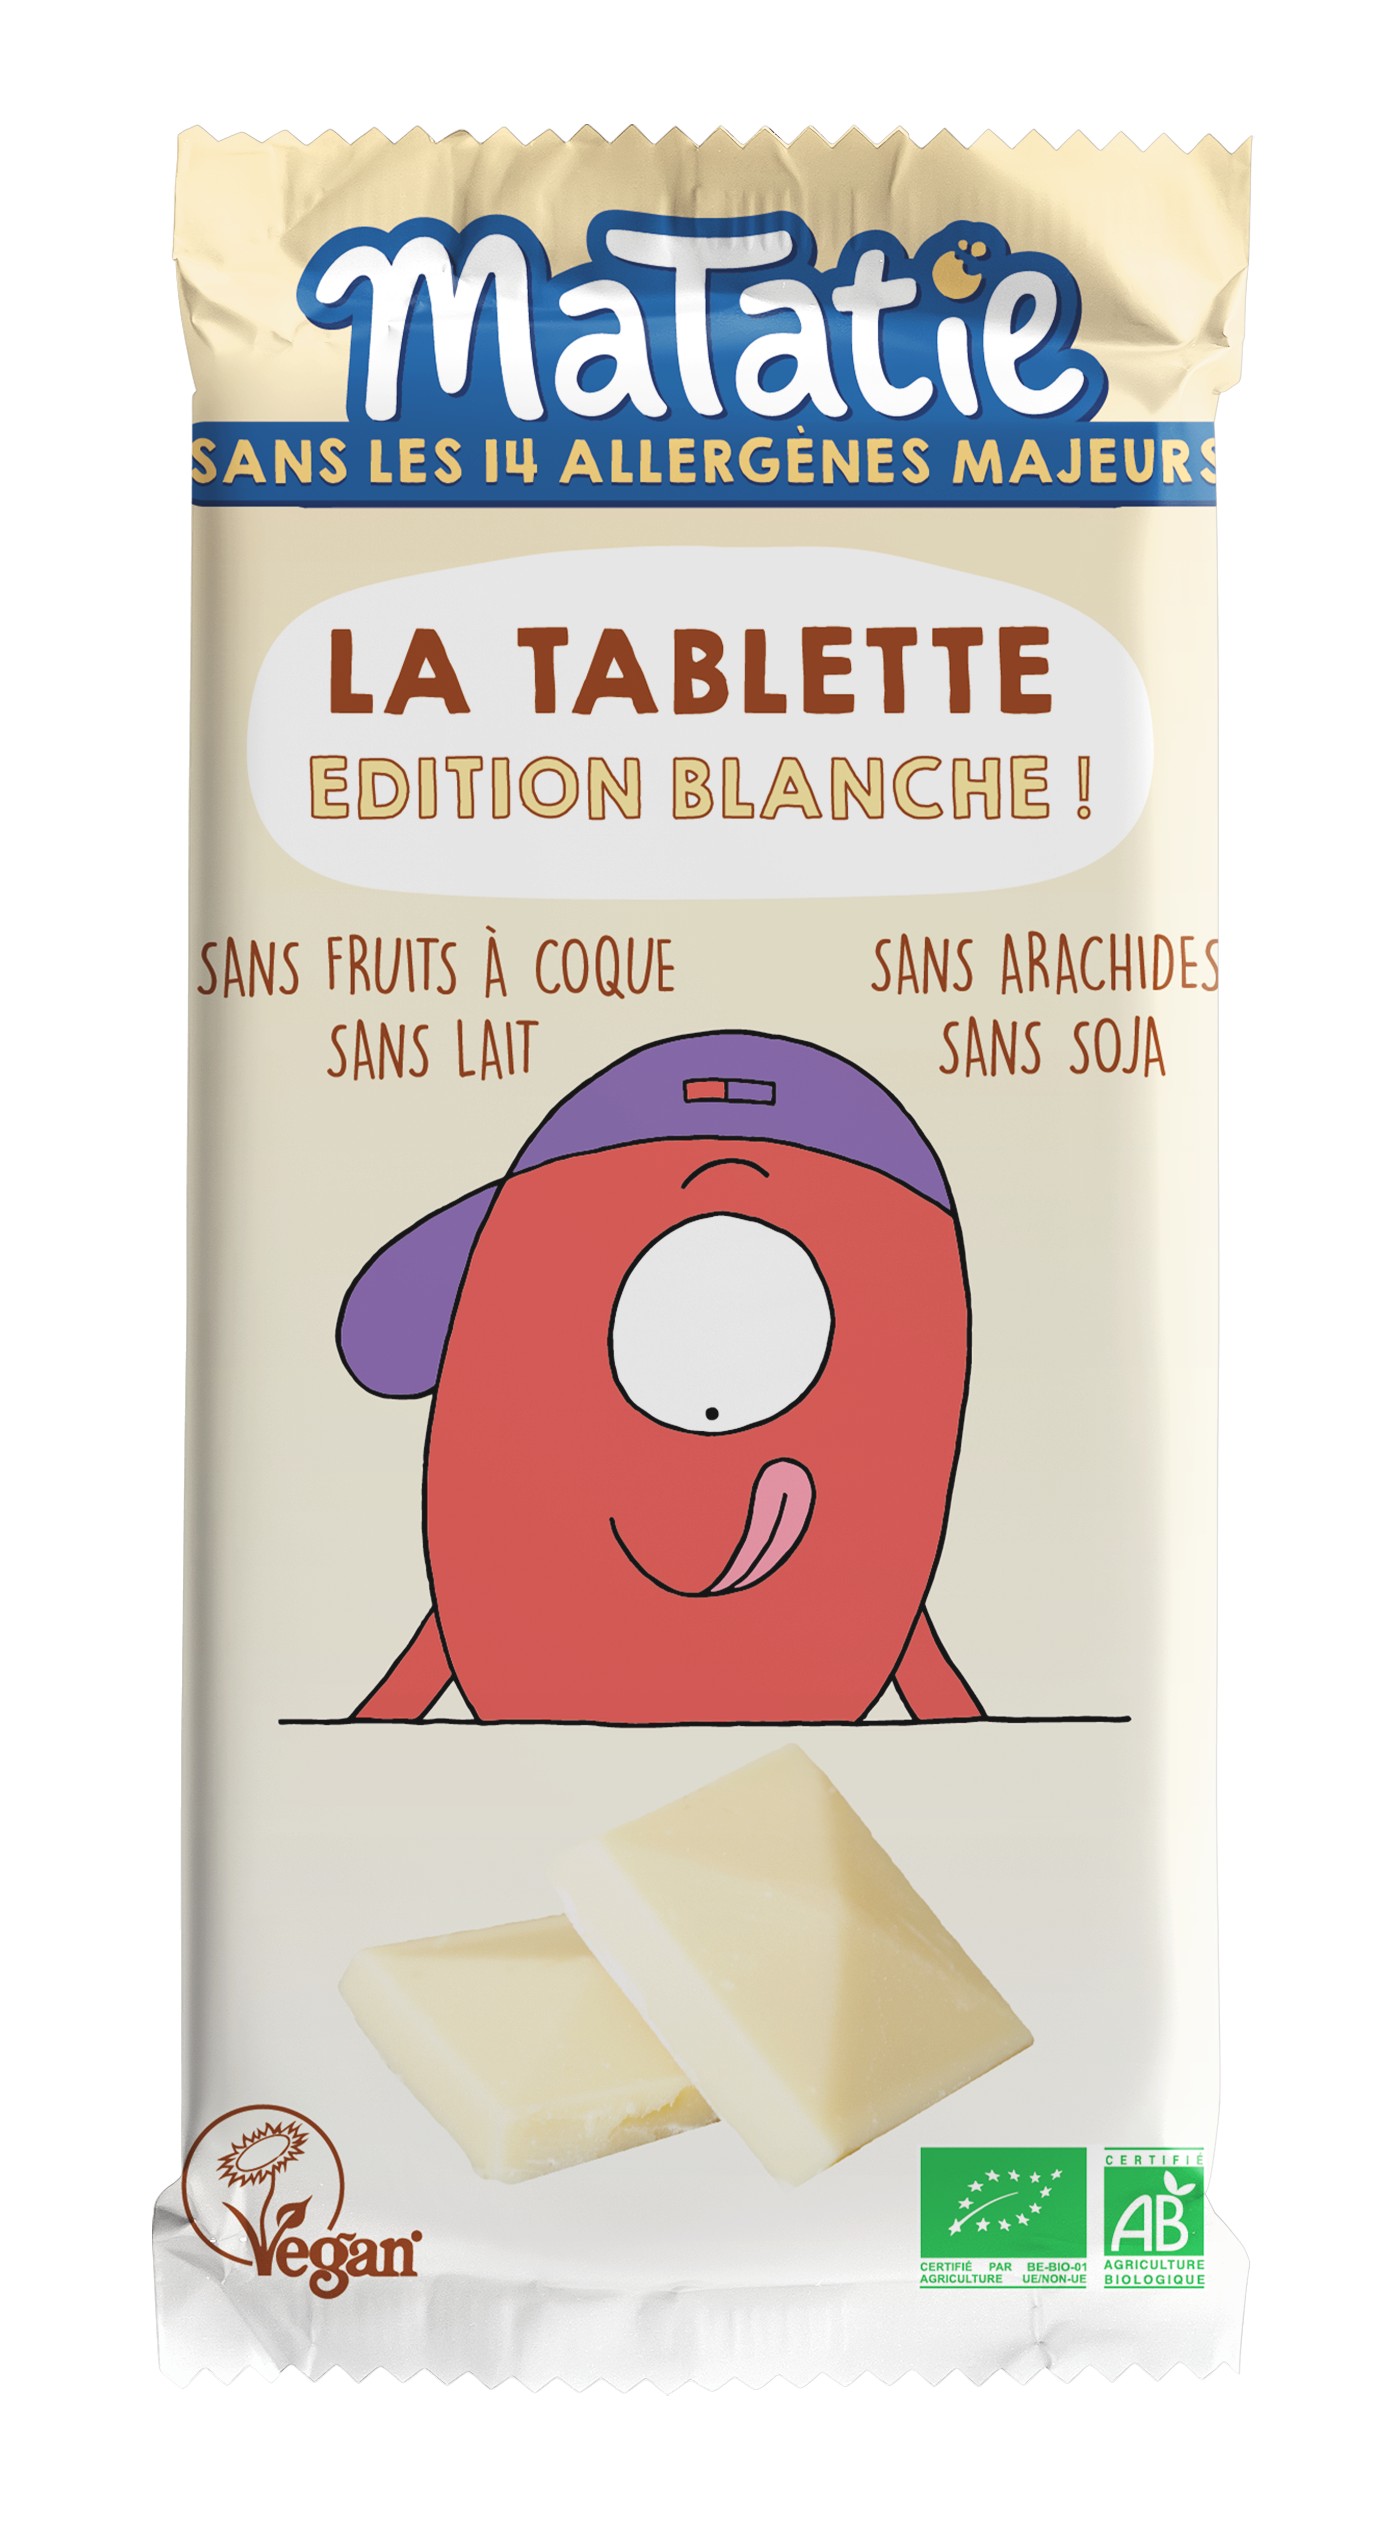 La tablette Edition blanche ! - Matatie